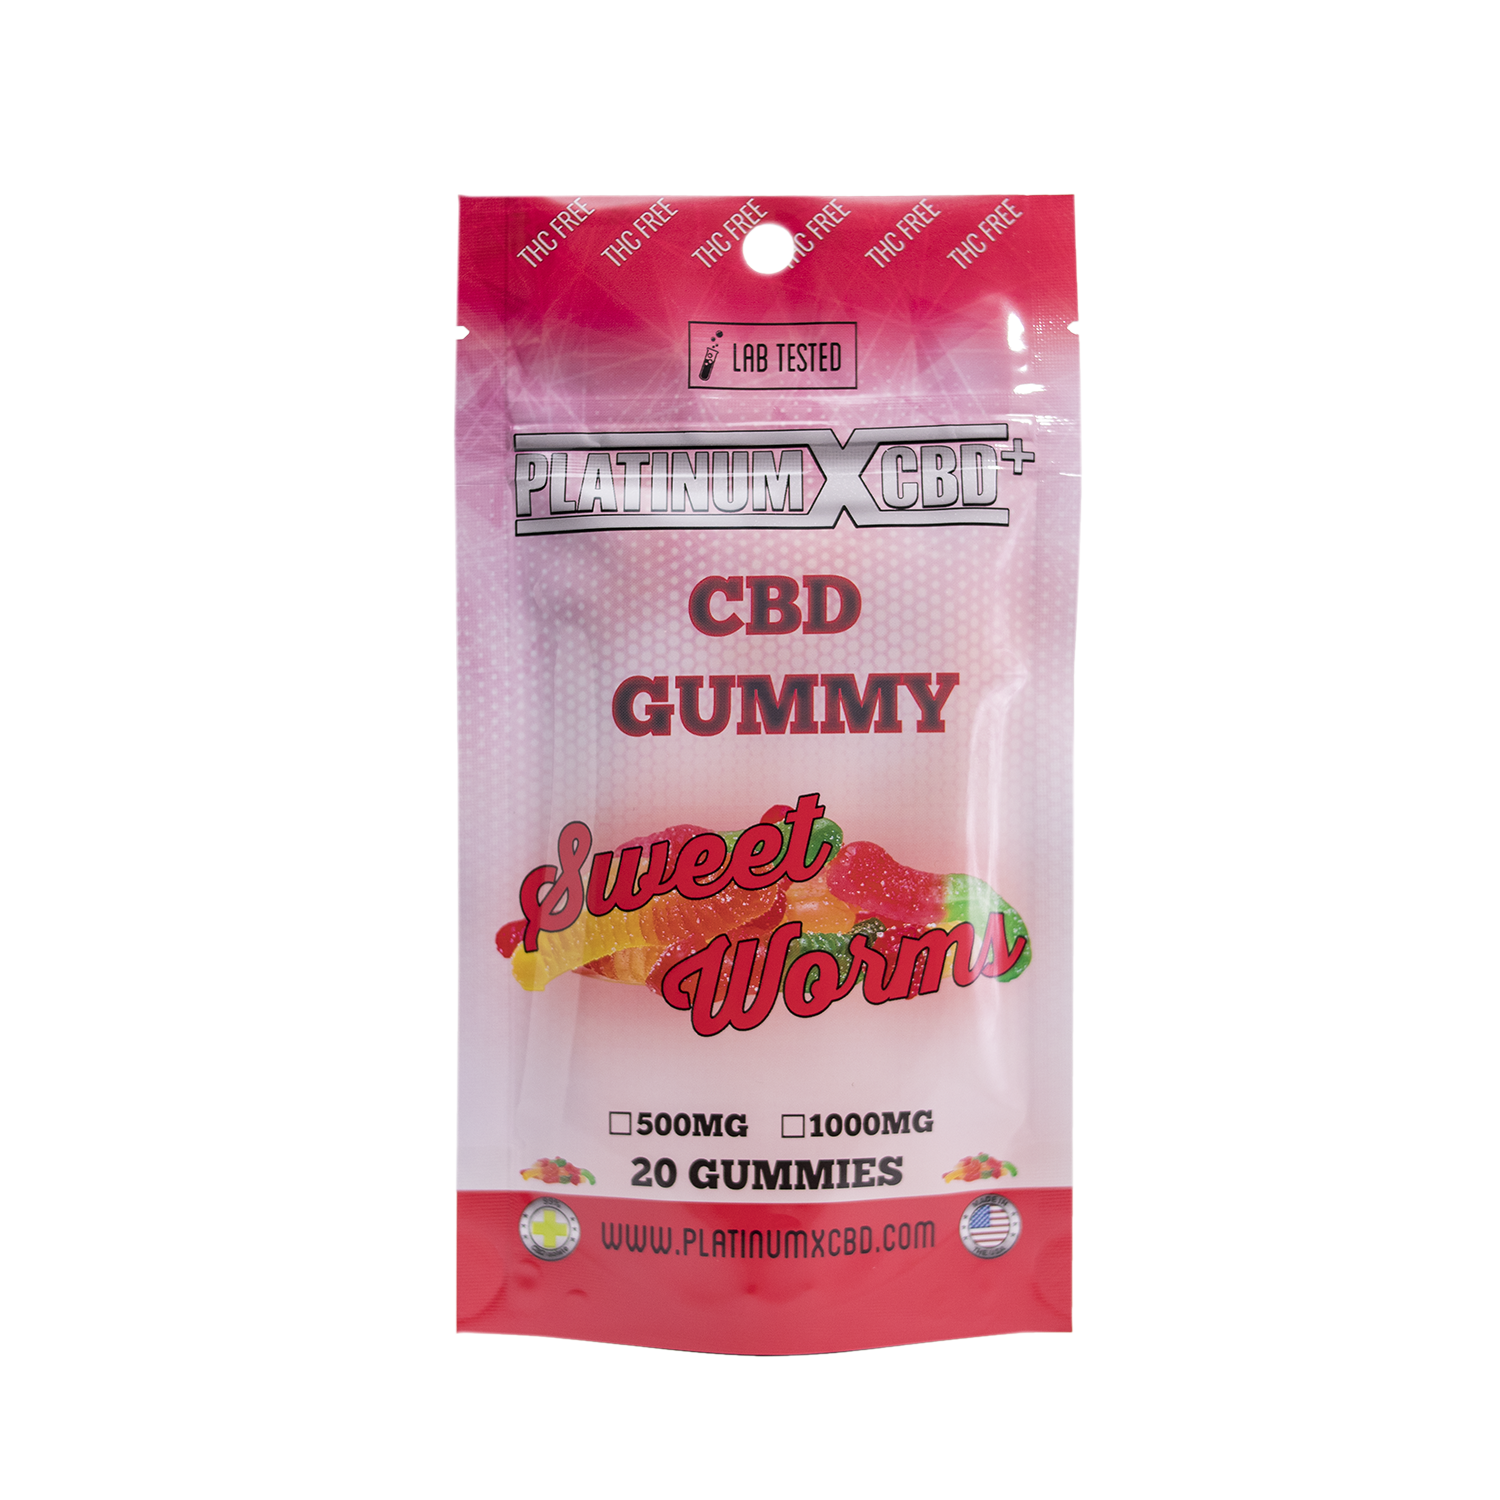 cbd Gummy, Gummy cbd, gummy, cbd gummies cbd, cbd products, the best cbd